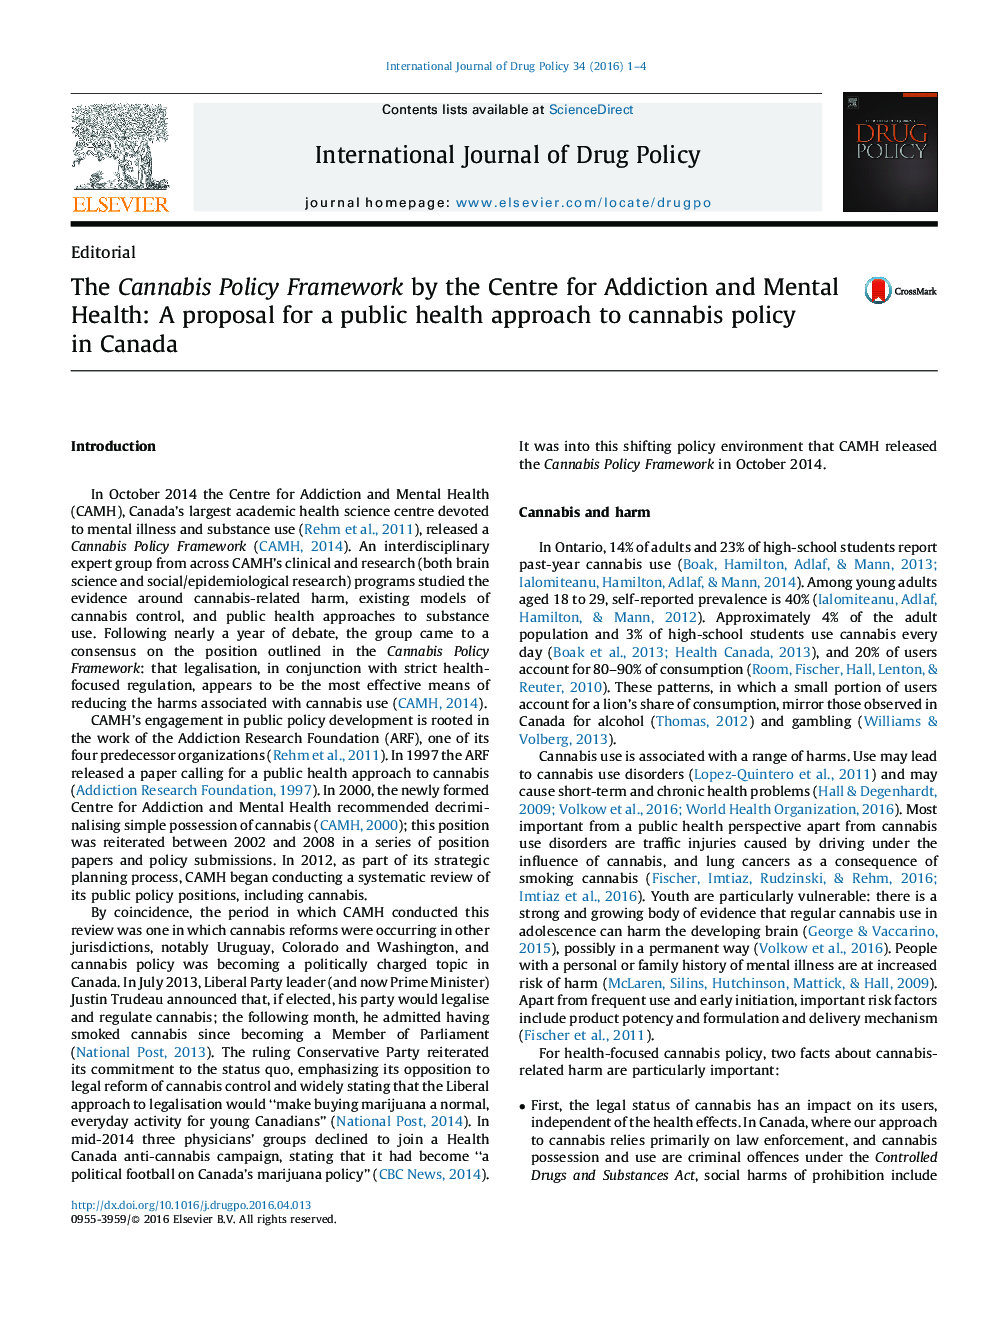 چارچوب سیاست کانابیس توسط مرکز اعتیاد و سلامت روان: پیشنهاد یک رویکرد بهداشت عمومی به سیاست کانابیس در کانادا 